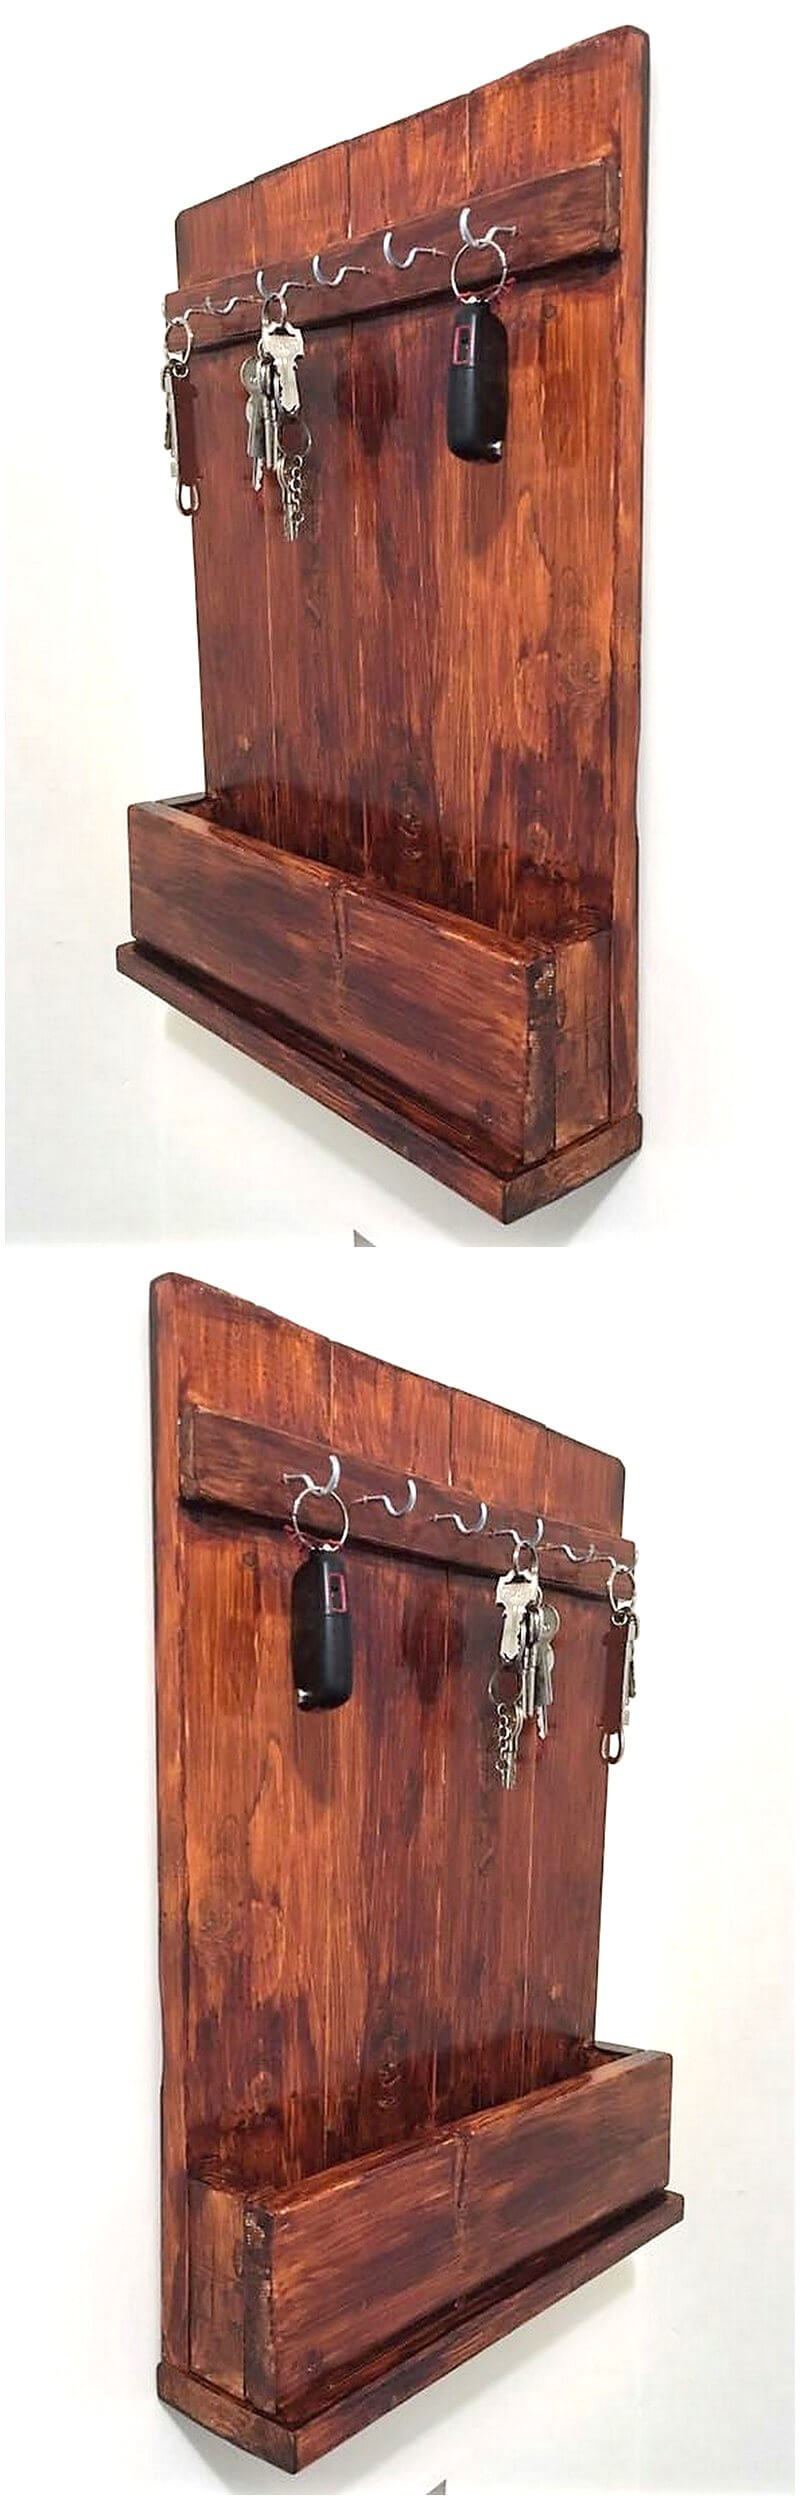 wood pallet keyholder rack